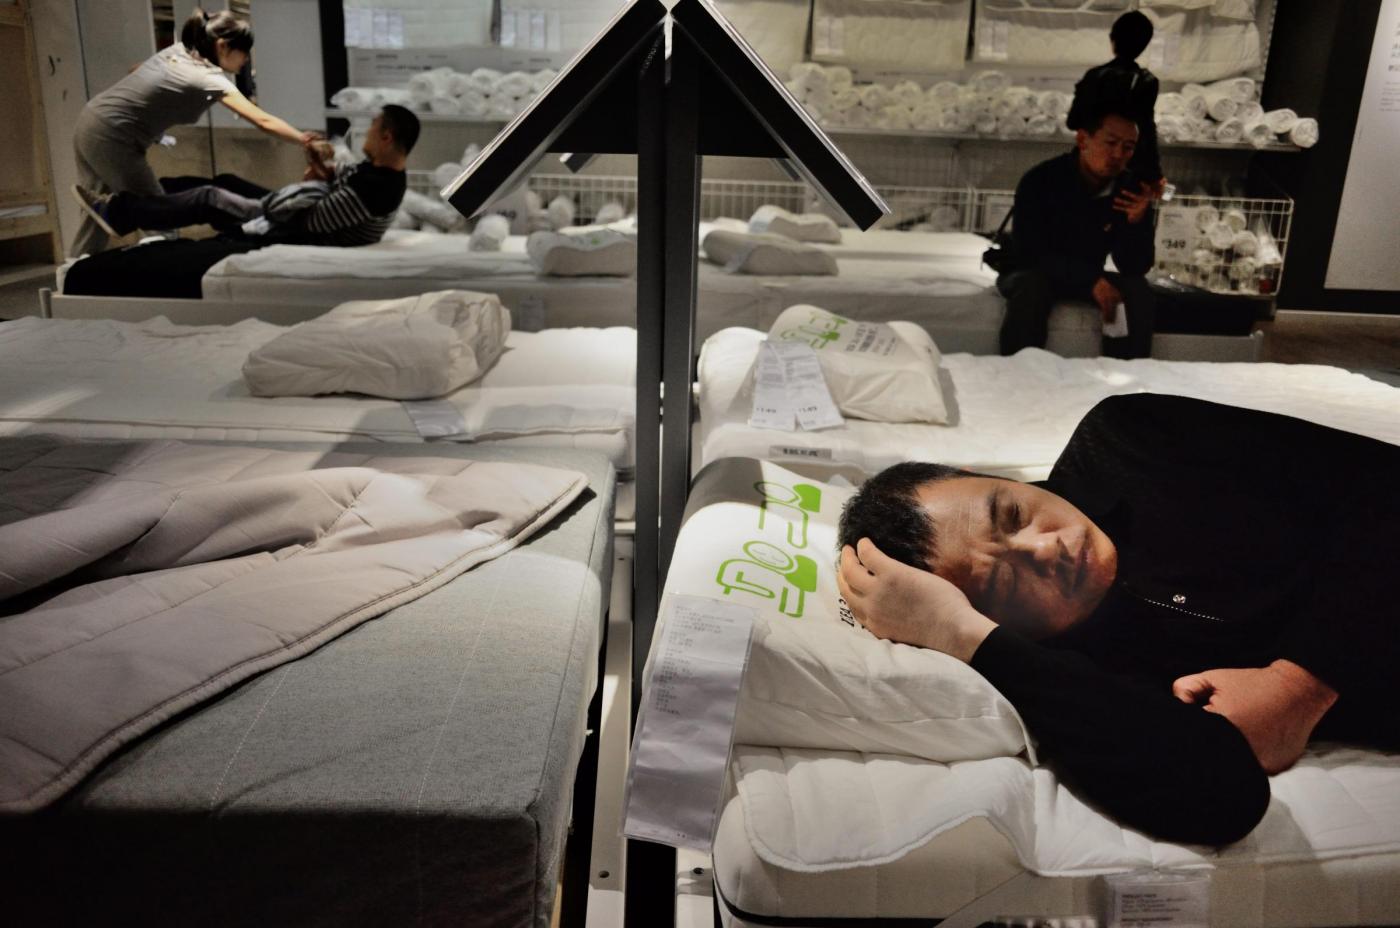 In Cina, i clienti ad Ikea dormono sui letti 12